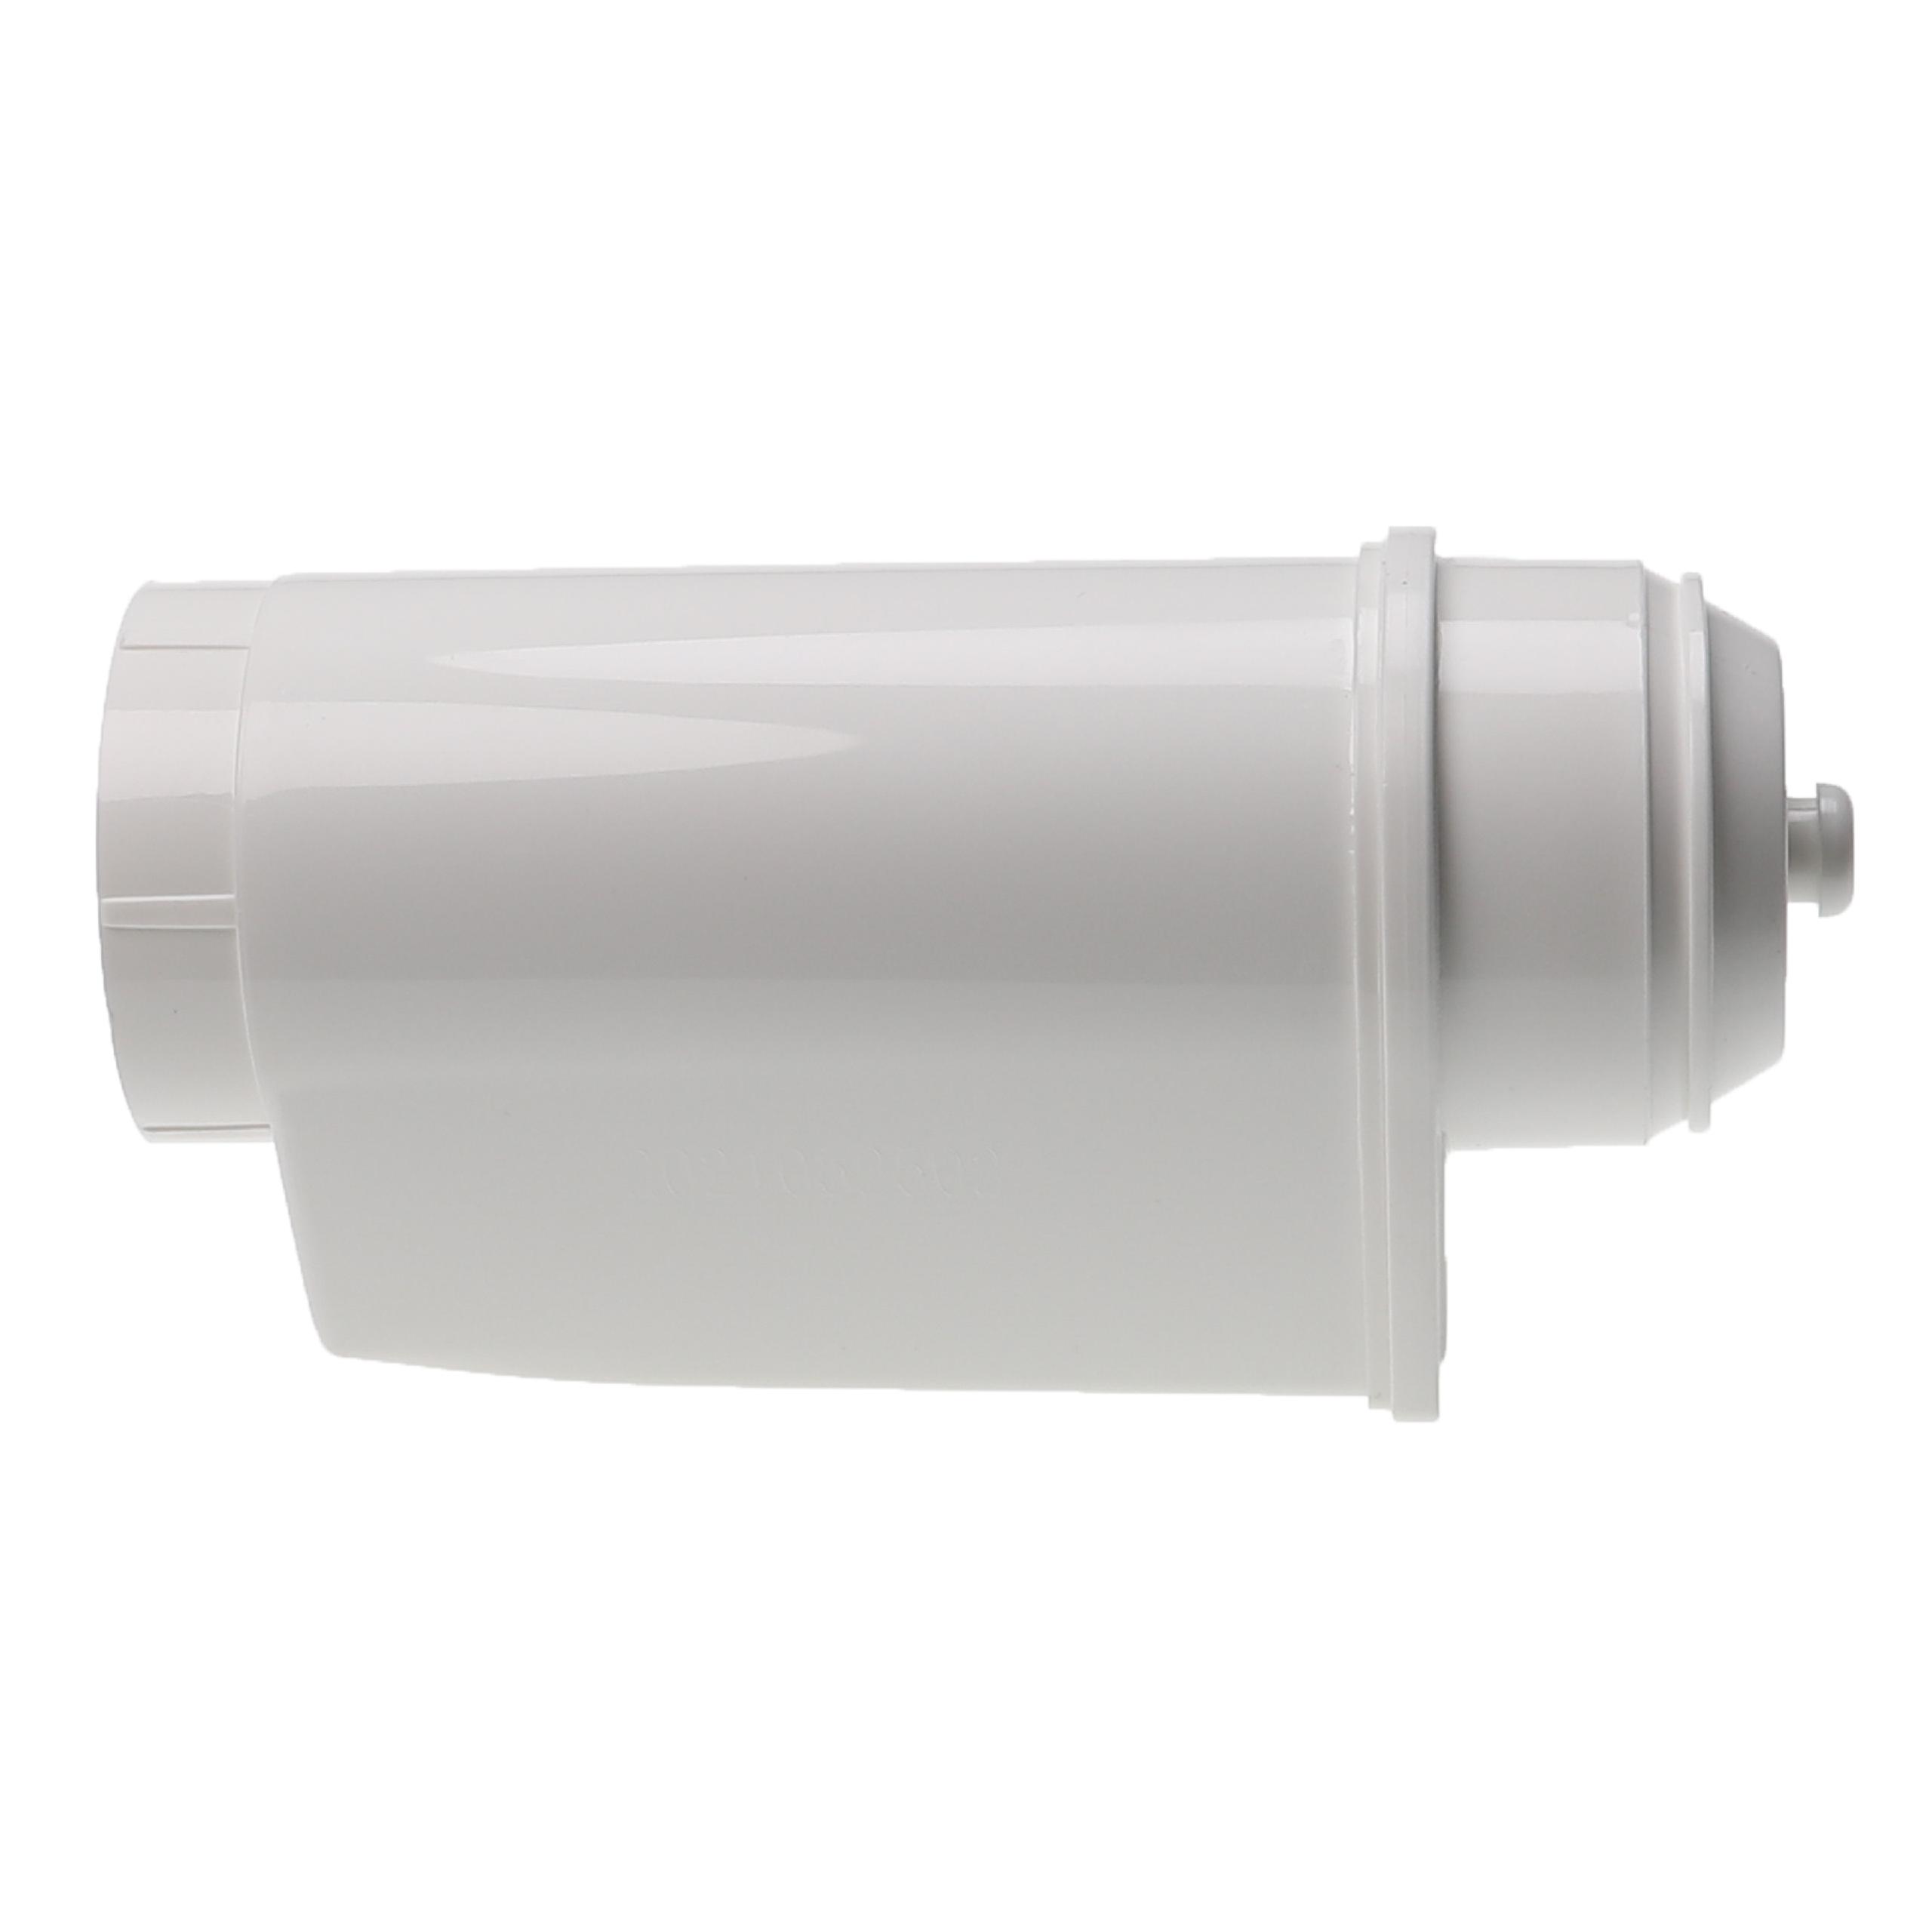 3x Filtr wody do ekspresu Bosch zamiennik Siemens TZ70033 - biały